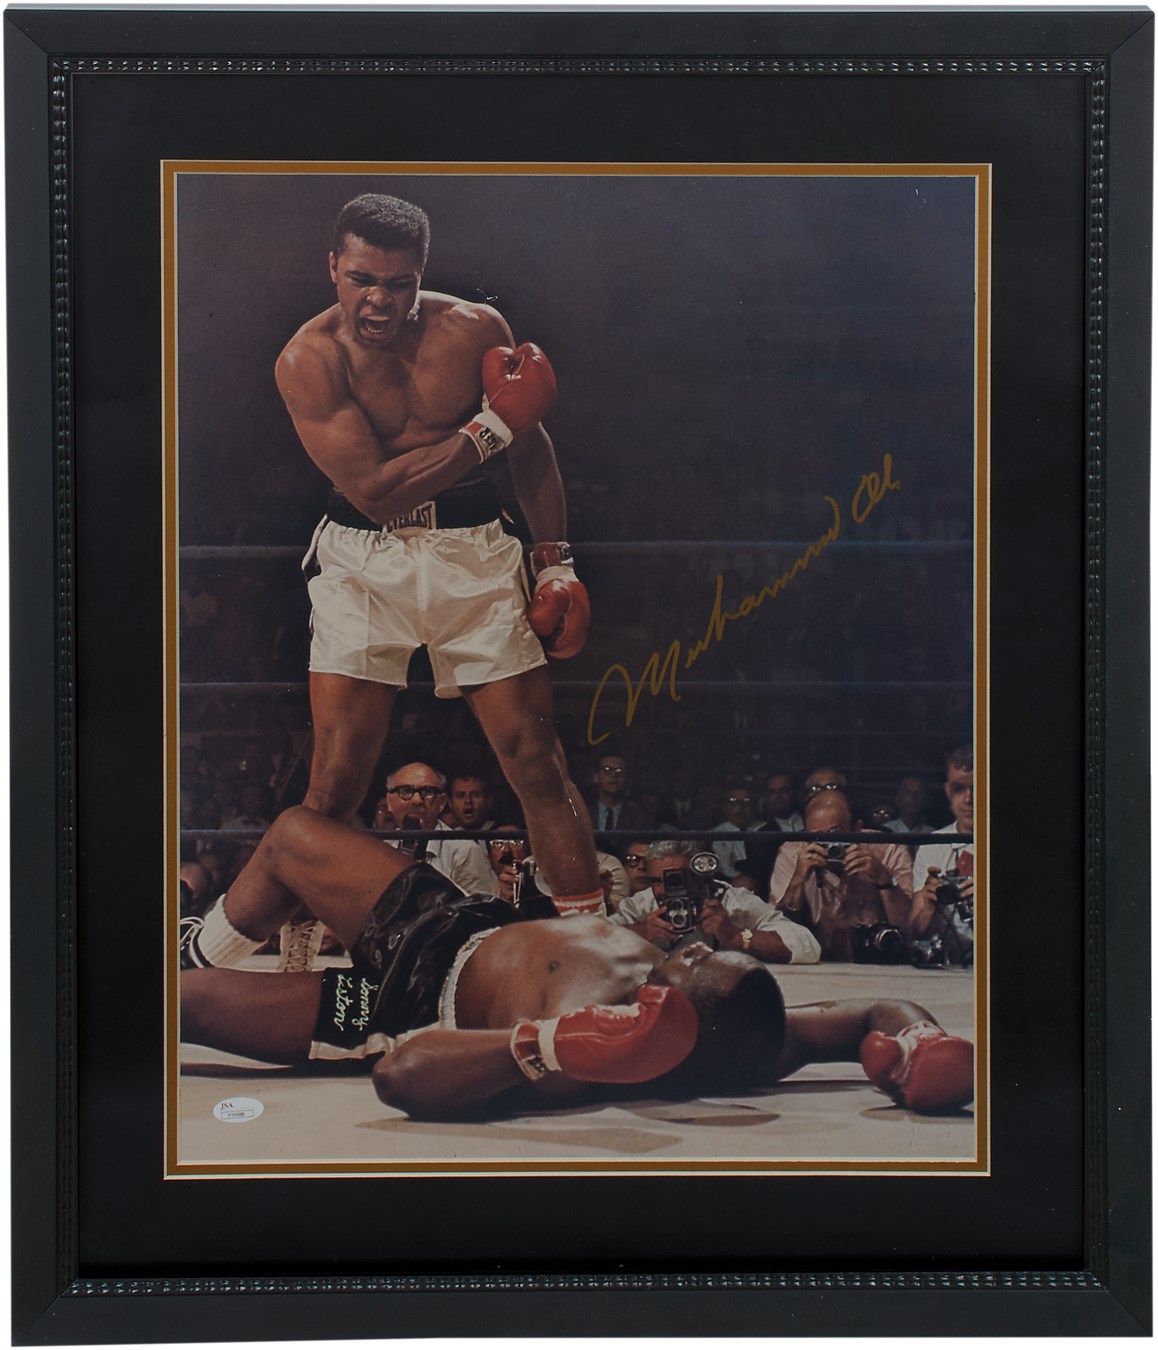 Muhammad Ali & Boxing - Muhammad Ali Signed Photo Over Sonny Liston with Large Vintage Signature (JSA)